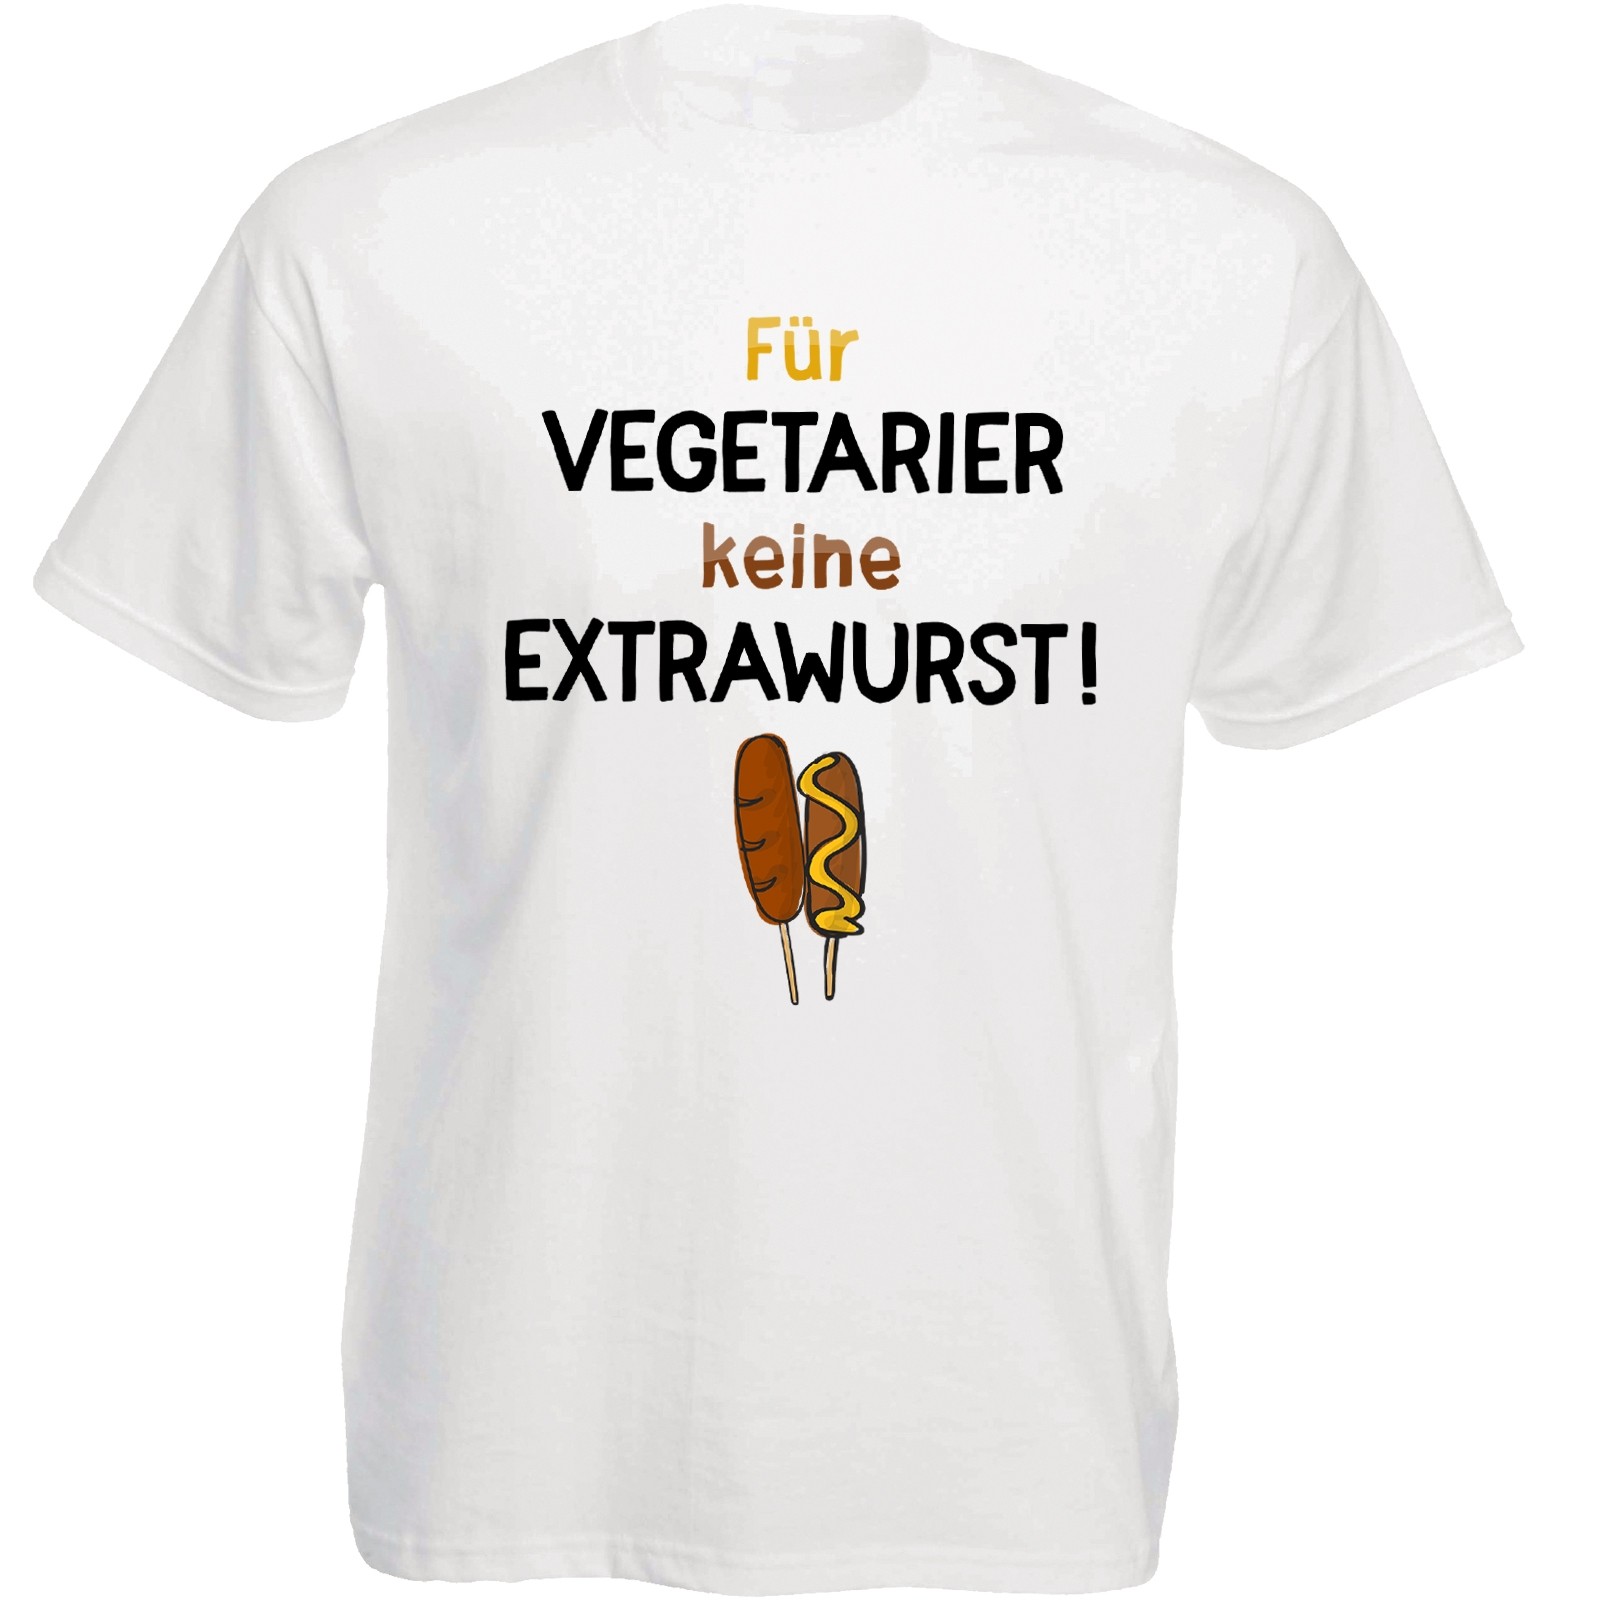 Funshirt weiß oder schwarz, als Tanktop oder Shirt - Für Vegetarier keine Extrawurst!